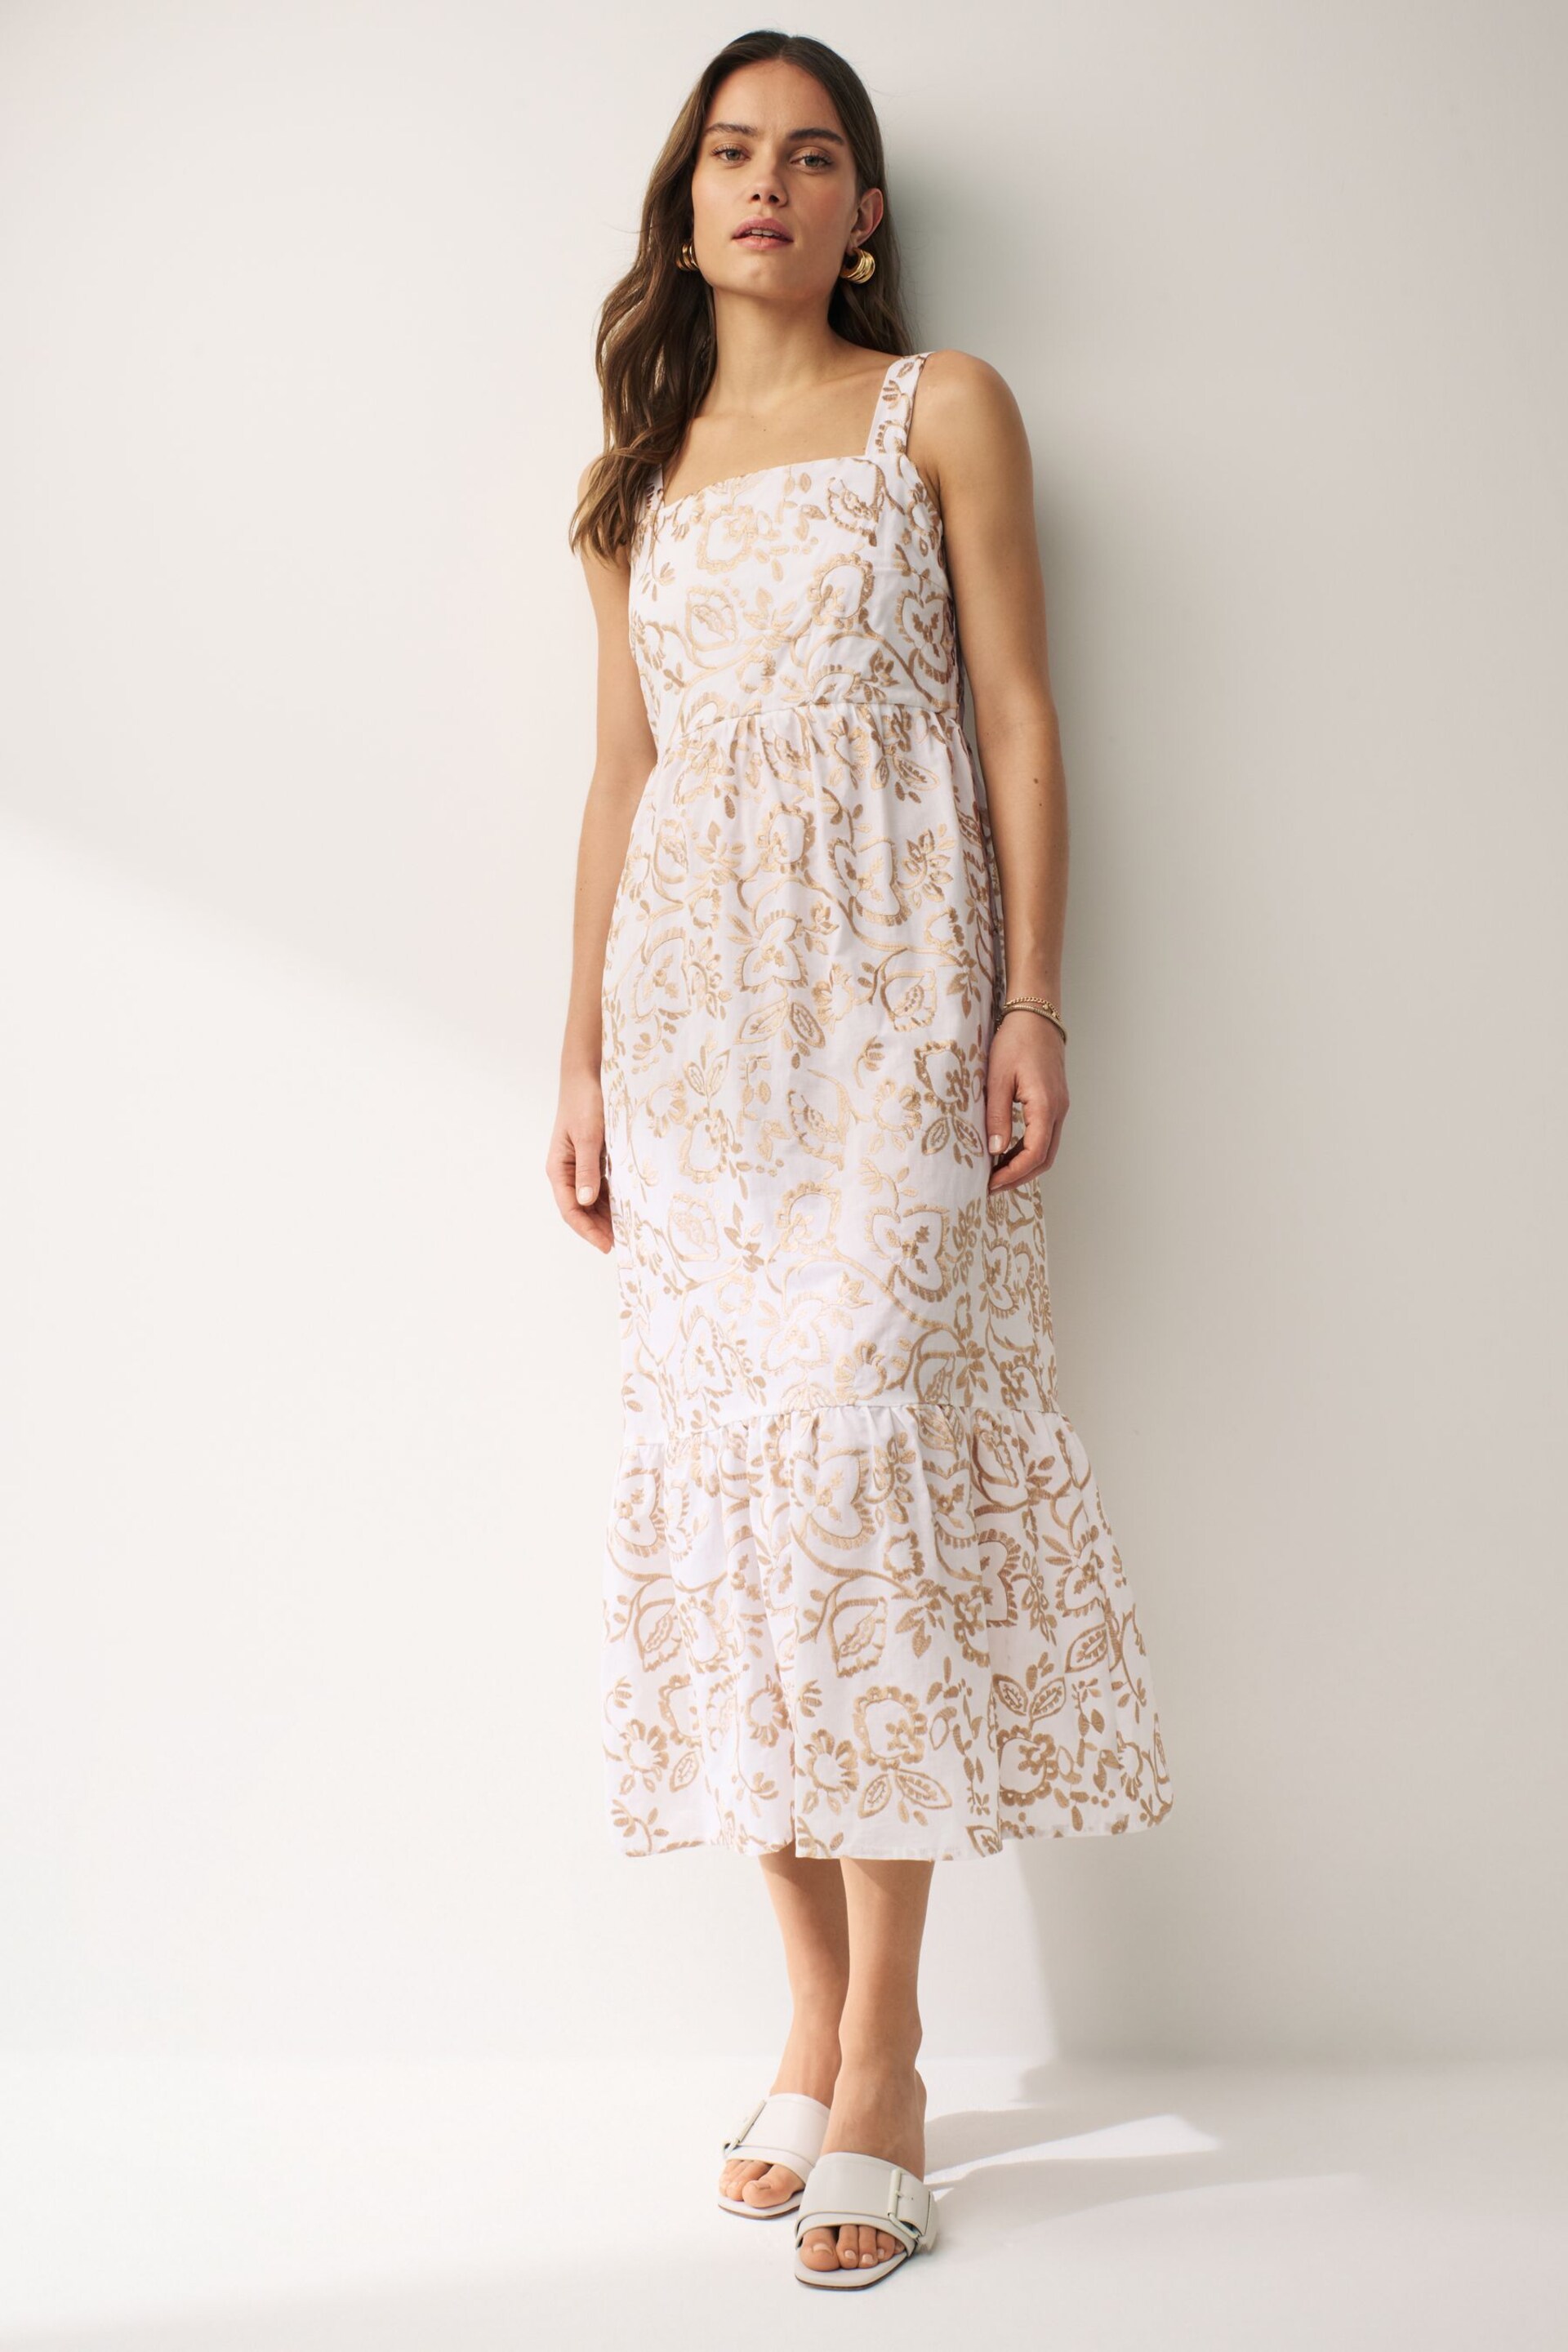 Emma Marella Midi Strap White Dress - Image 1 of 3